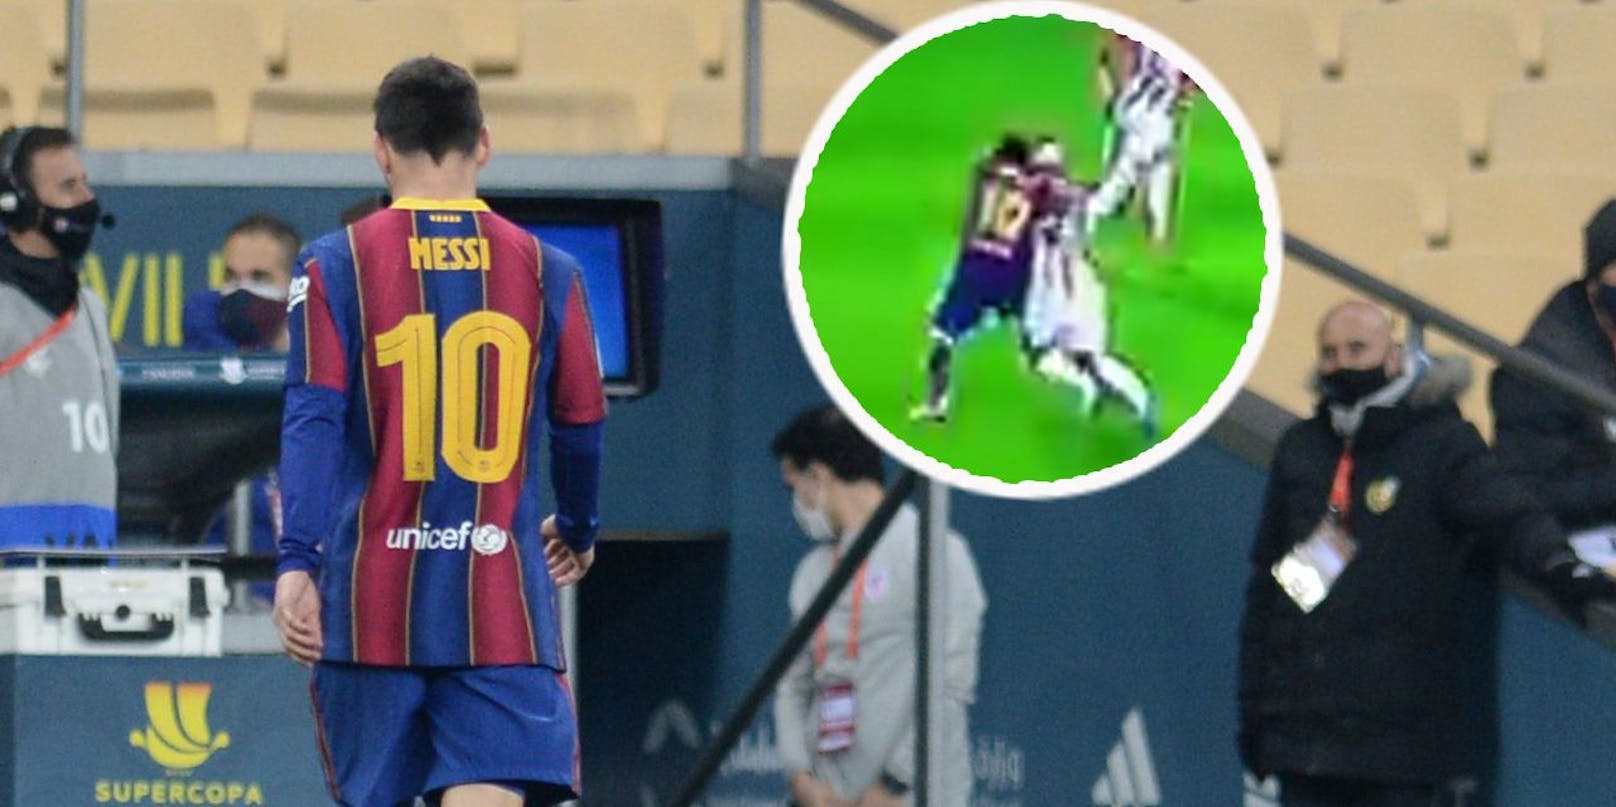 Lionel Messi schleicht nach seinem Schlag und der Roten Karte vom Platz.